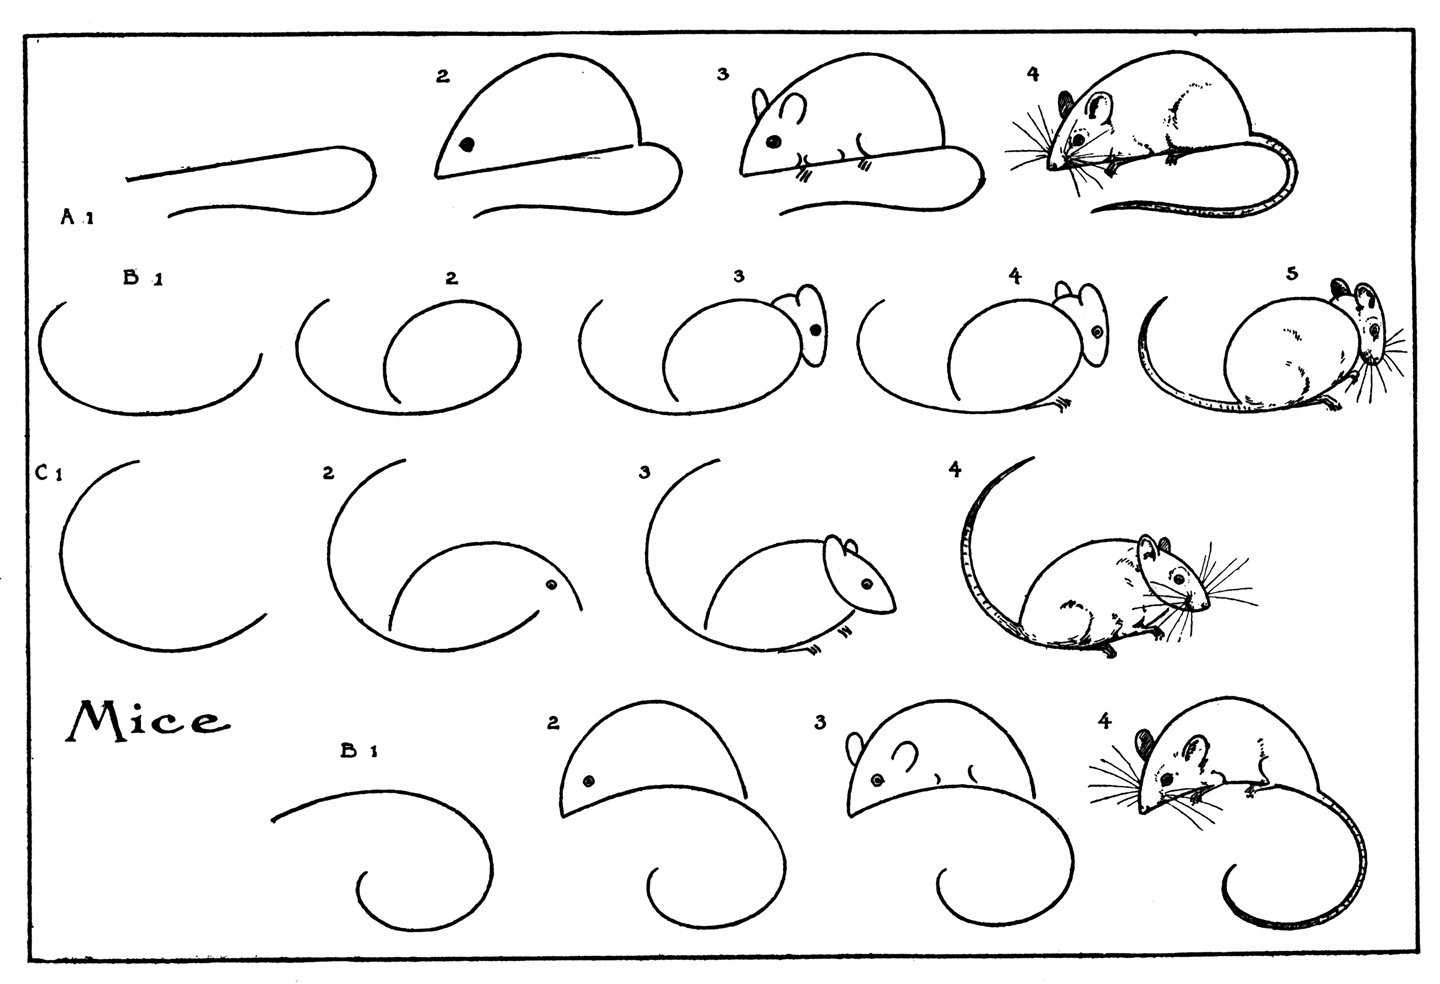 Как нарисовать мышь карандашом: поэтапная инструкция для детей. учимся рисовать мышь быстро и легко своими руками